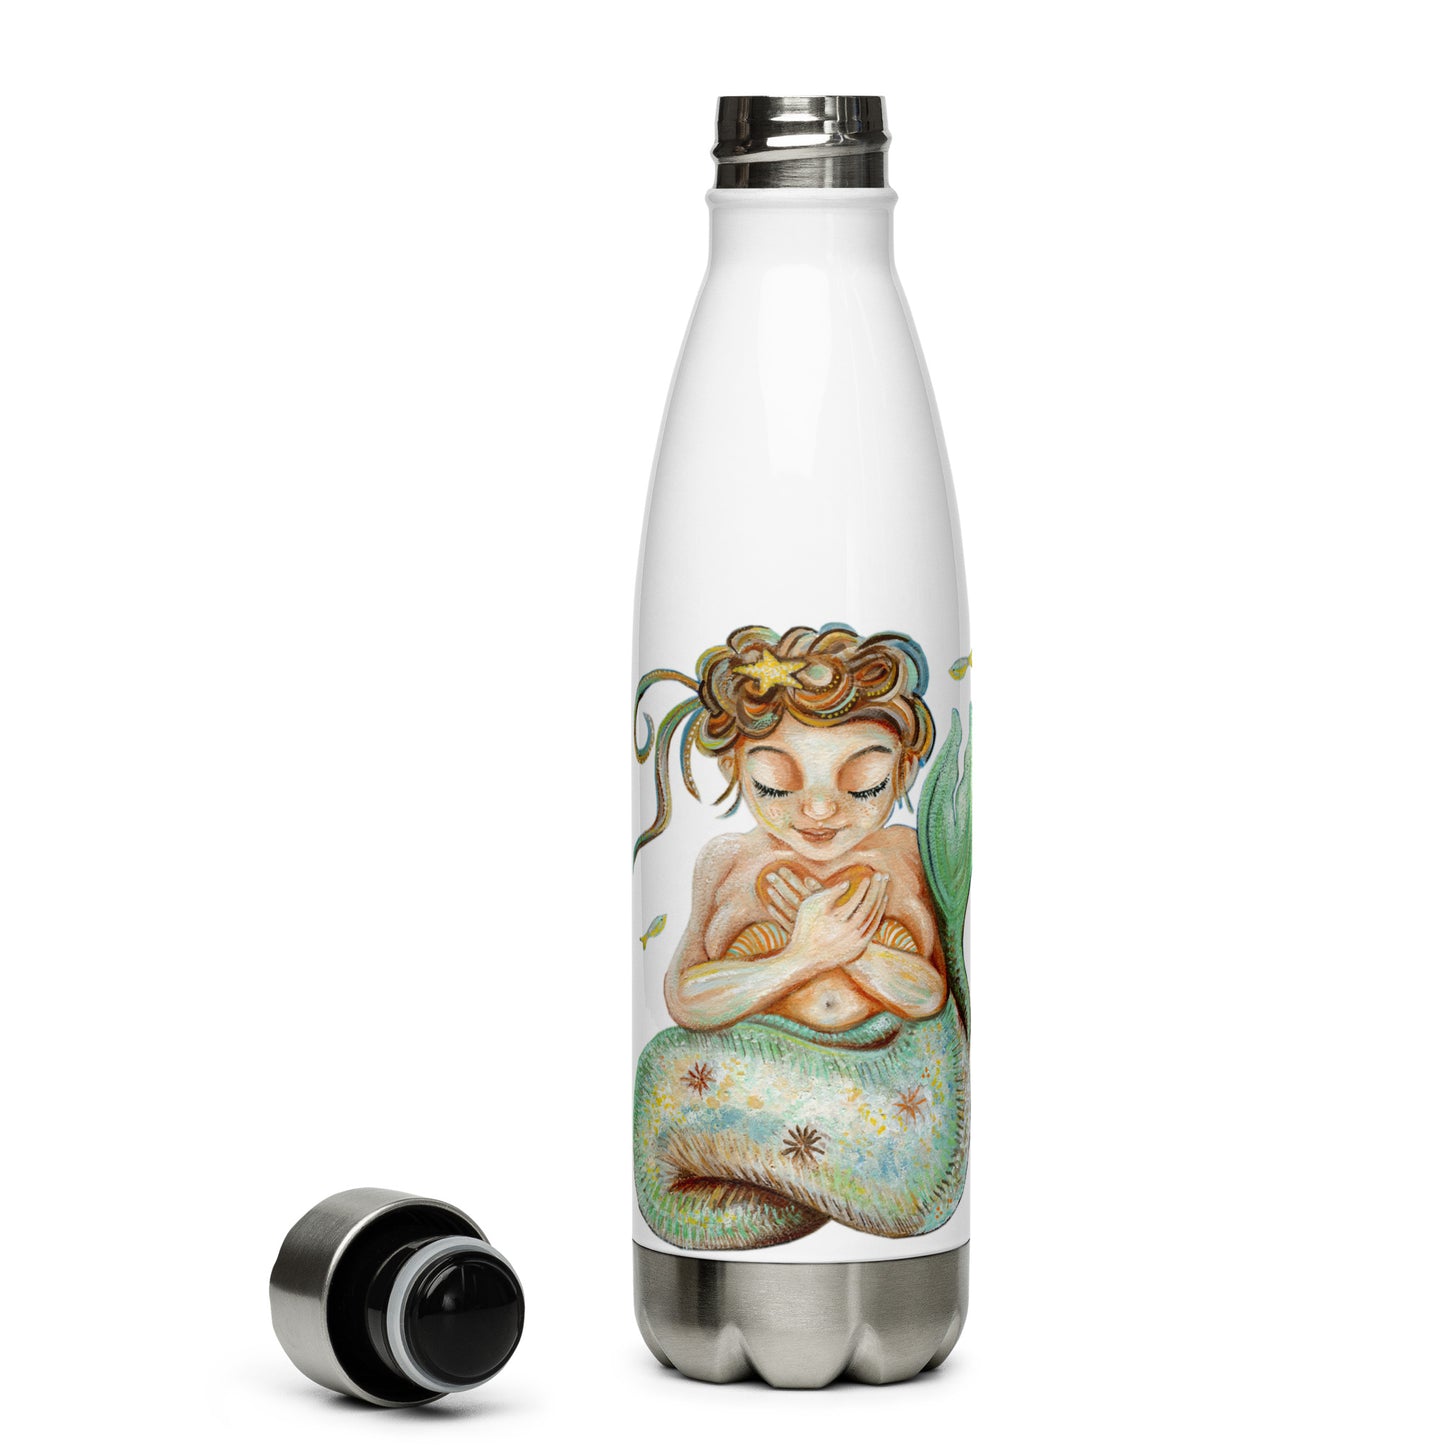 Mermaid Art Stainless Steel Water Bottle - with whimsical art by KmBerggren